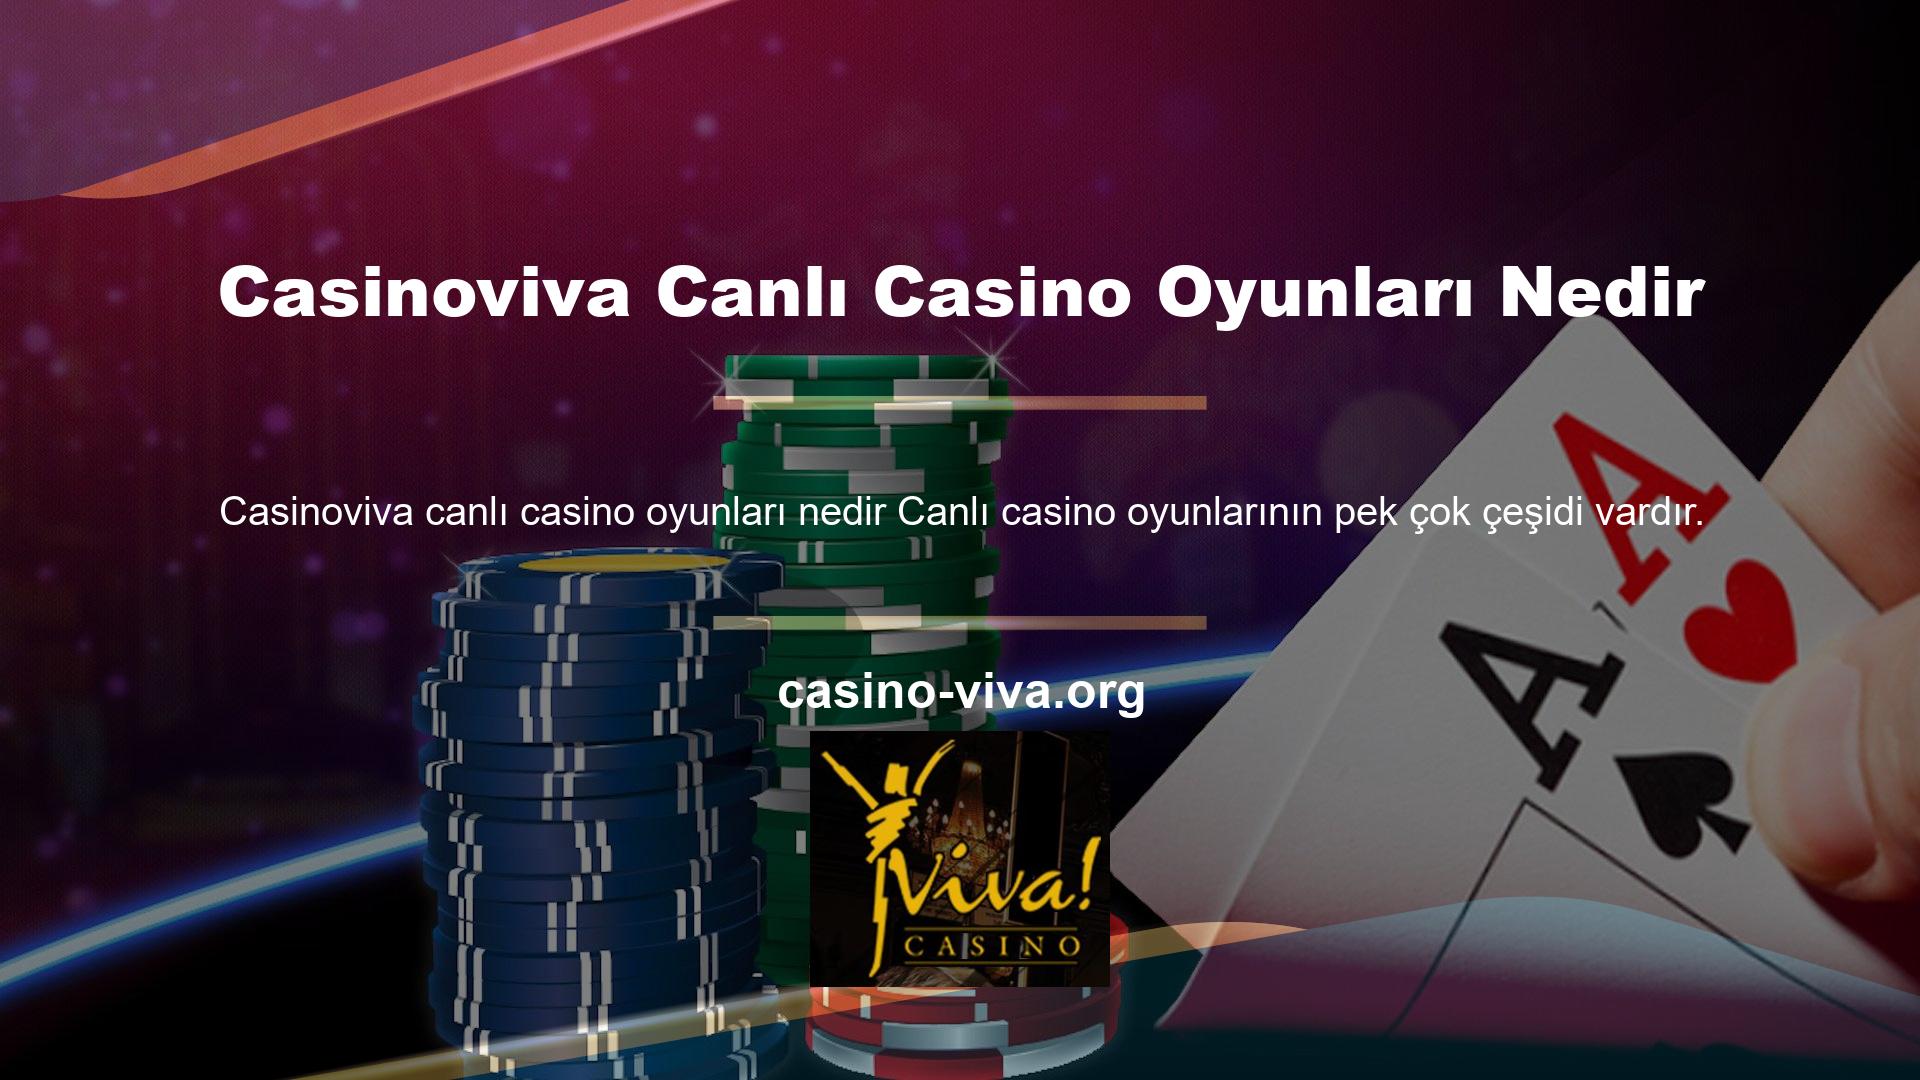 Canlı Casino Oyunları: Blackjack, canlı olarak sunulan oyunlardan biridir